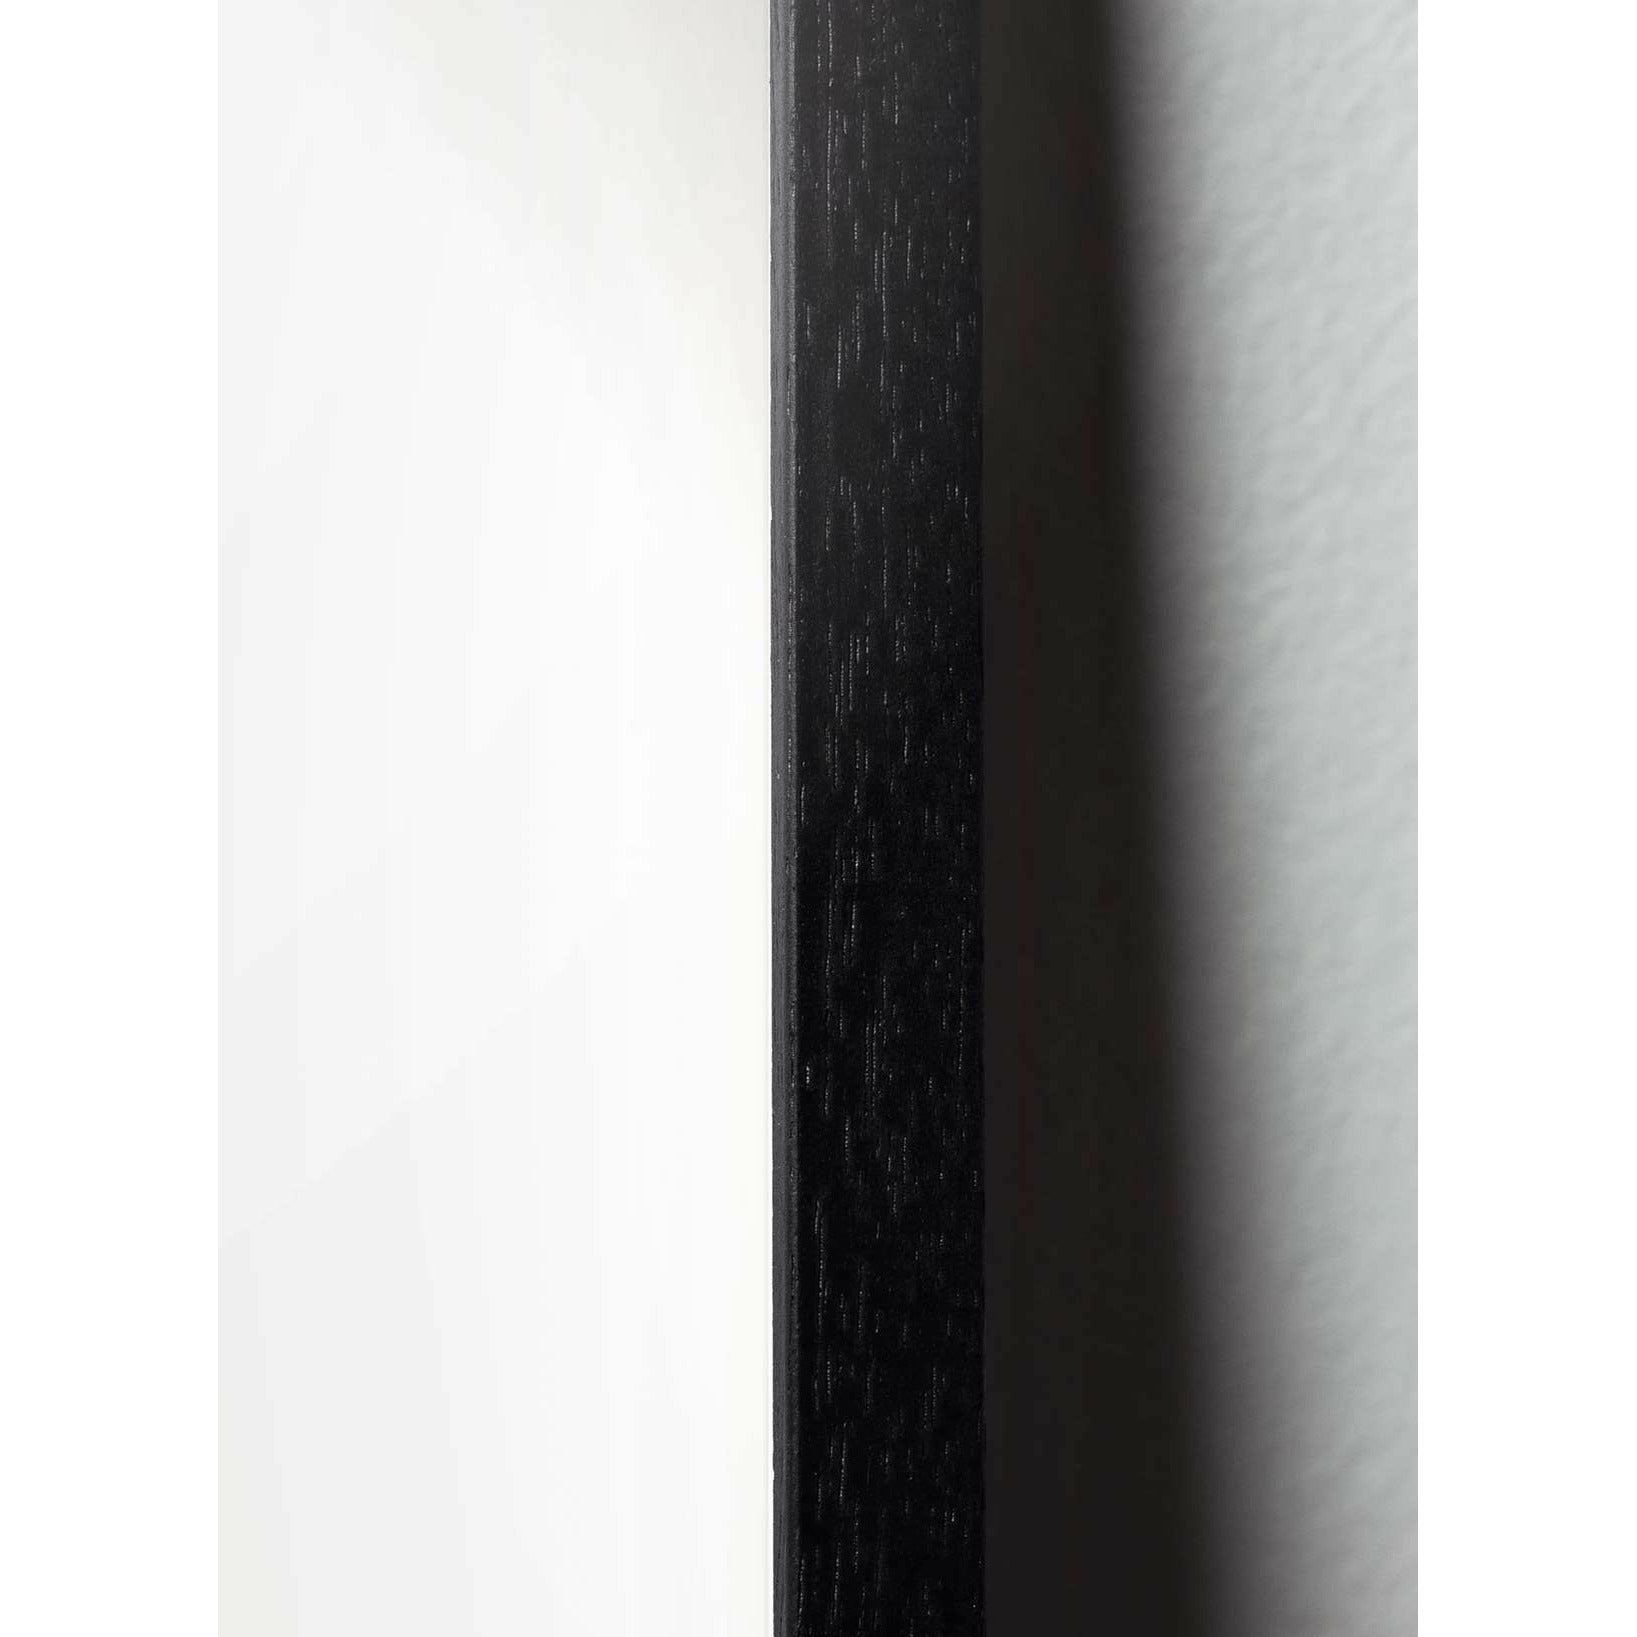 brainchild Snow -SoWall Classic -Poster, Rahmen im schwarz lackierten Holz A5, grüner Hintergrund